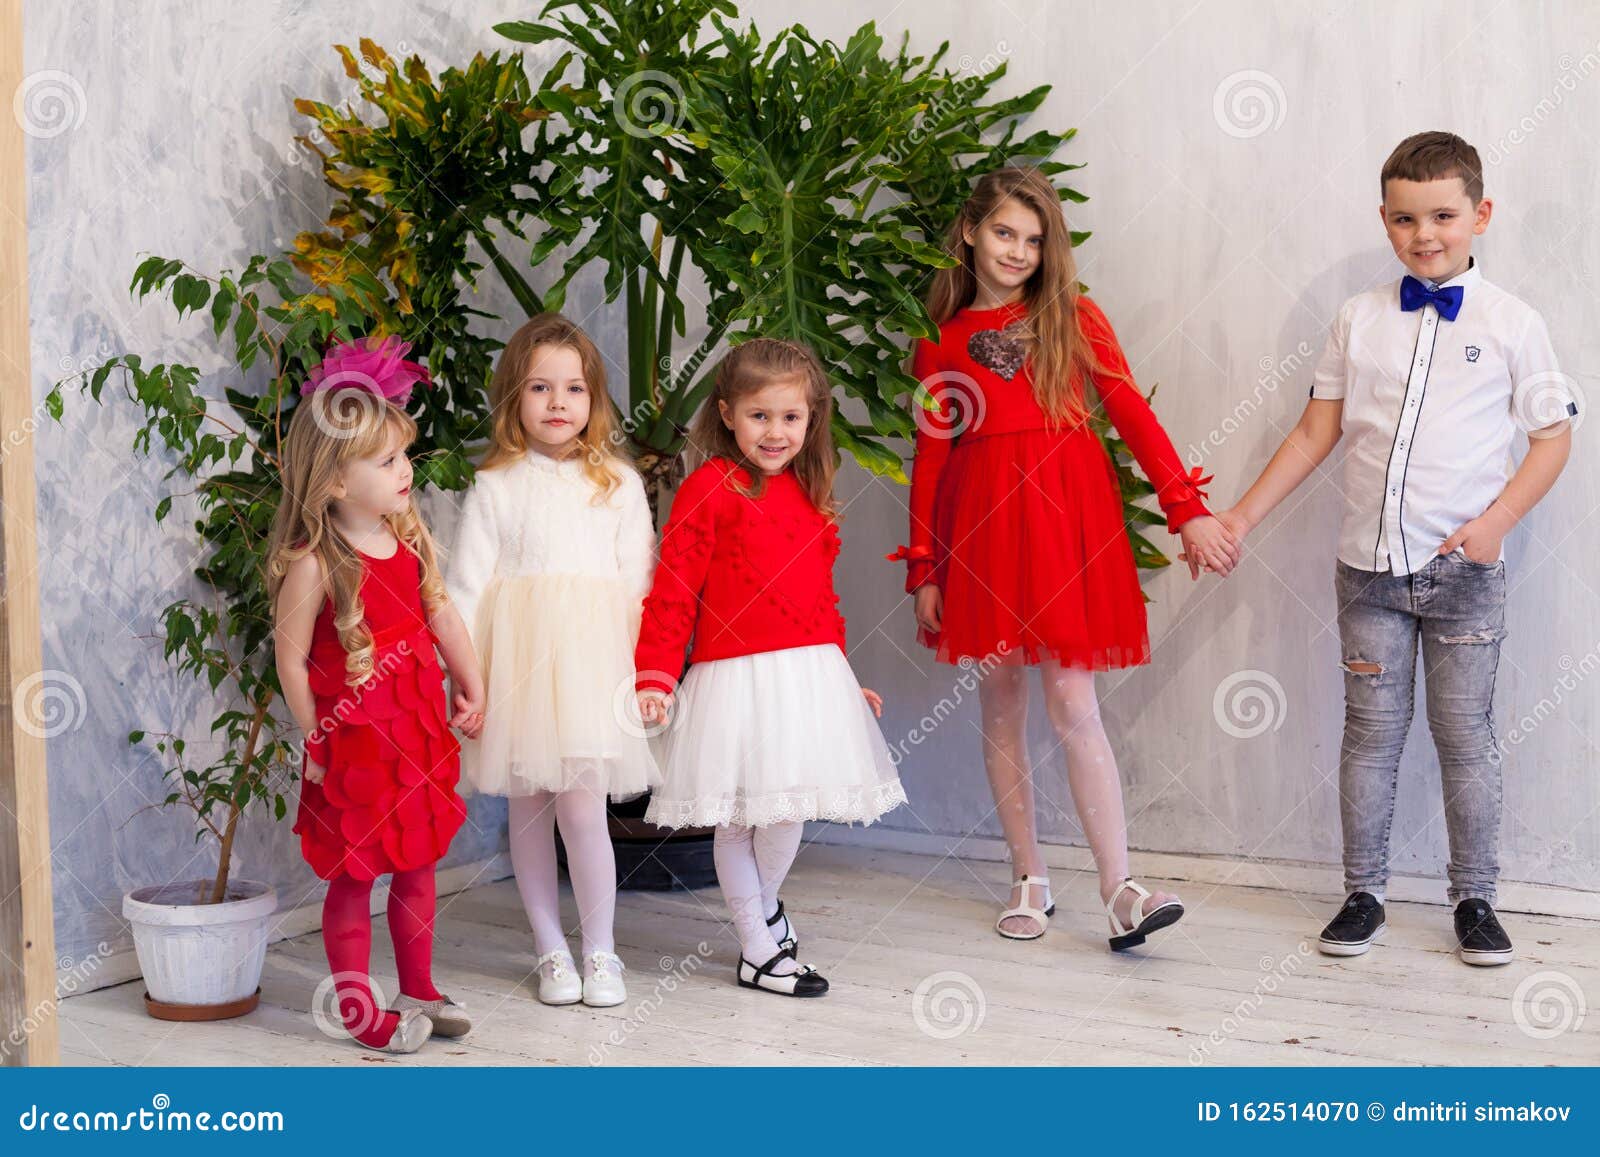 Niñas Y Niños De Rojo Y Blanco En Una Fiesta De Cumpleaños Foto de archivo - Imagen de muchacha, retrato: 162514070